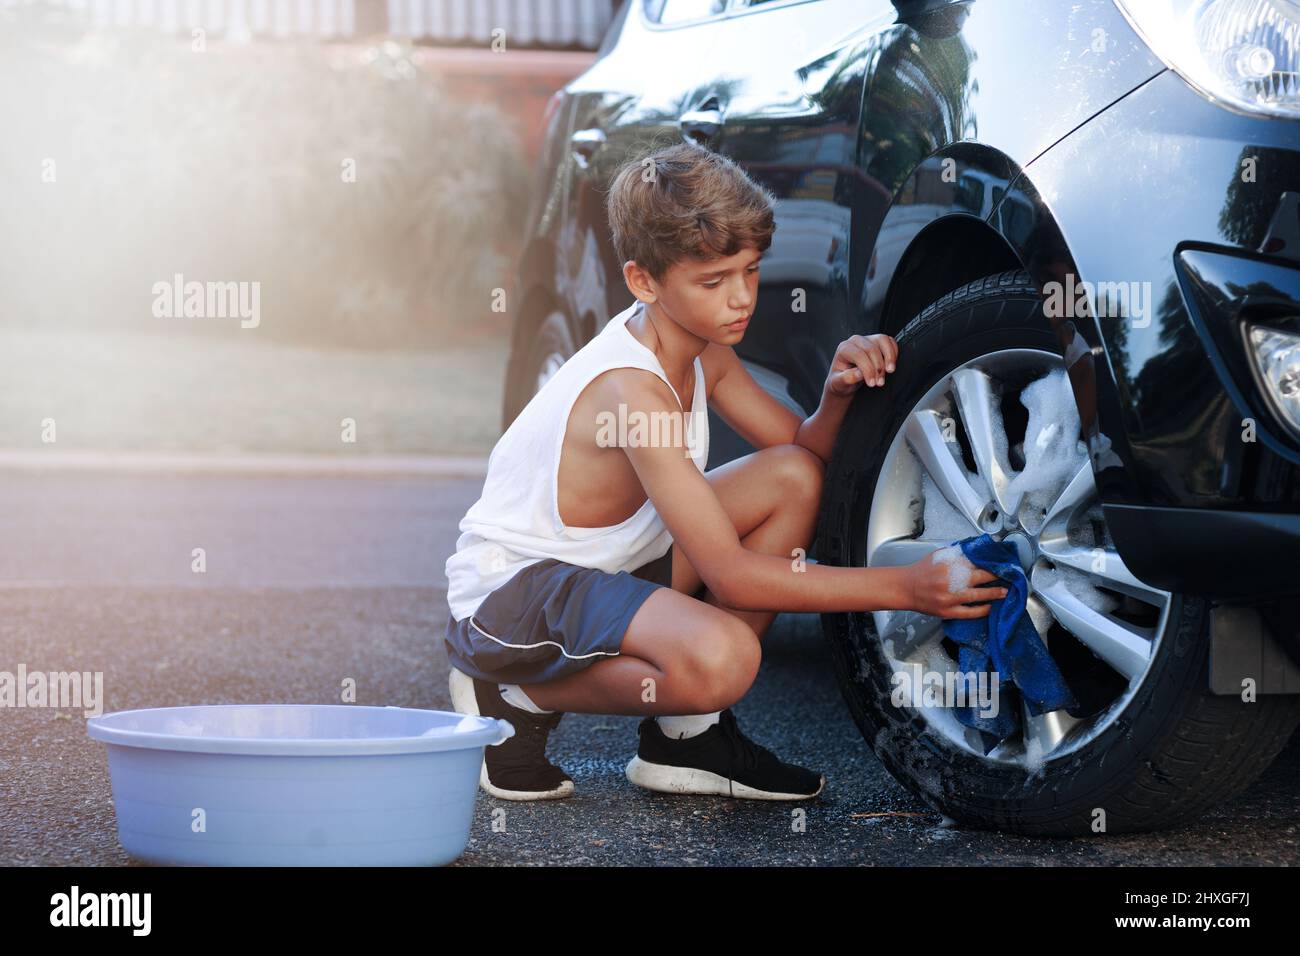 Scheuern Sie den ganzen Abrieb weg. Aufnahme eines jungen Jungen, der das Rad eines Autos wascht. Stockfoto